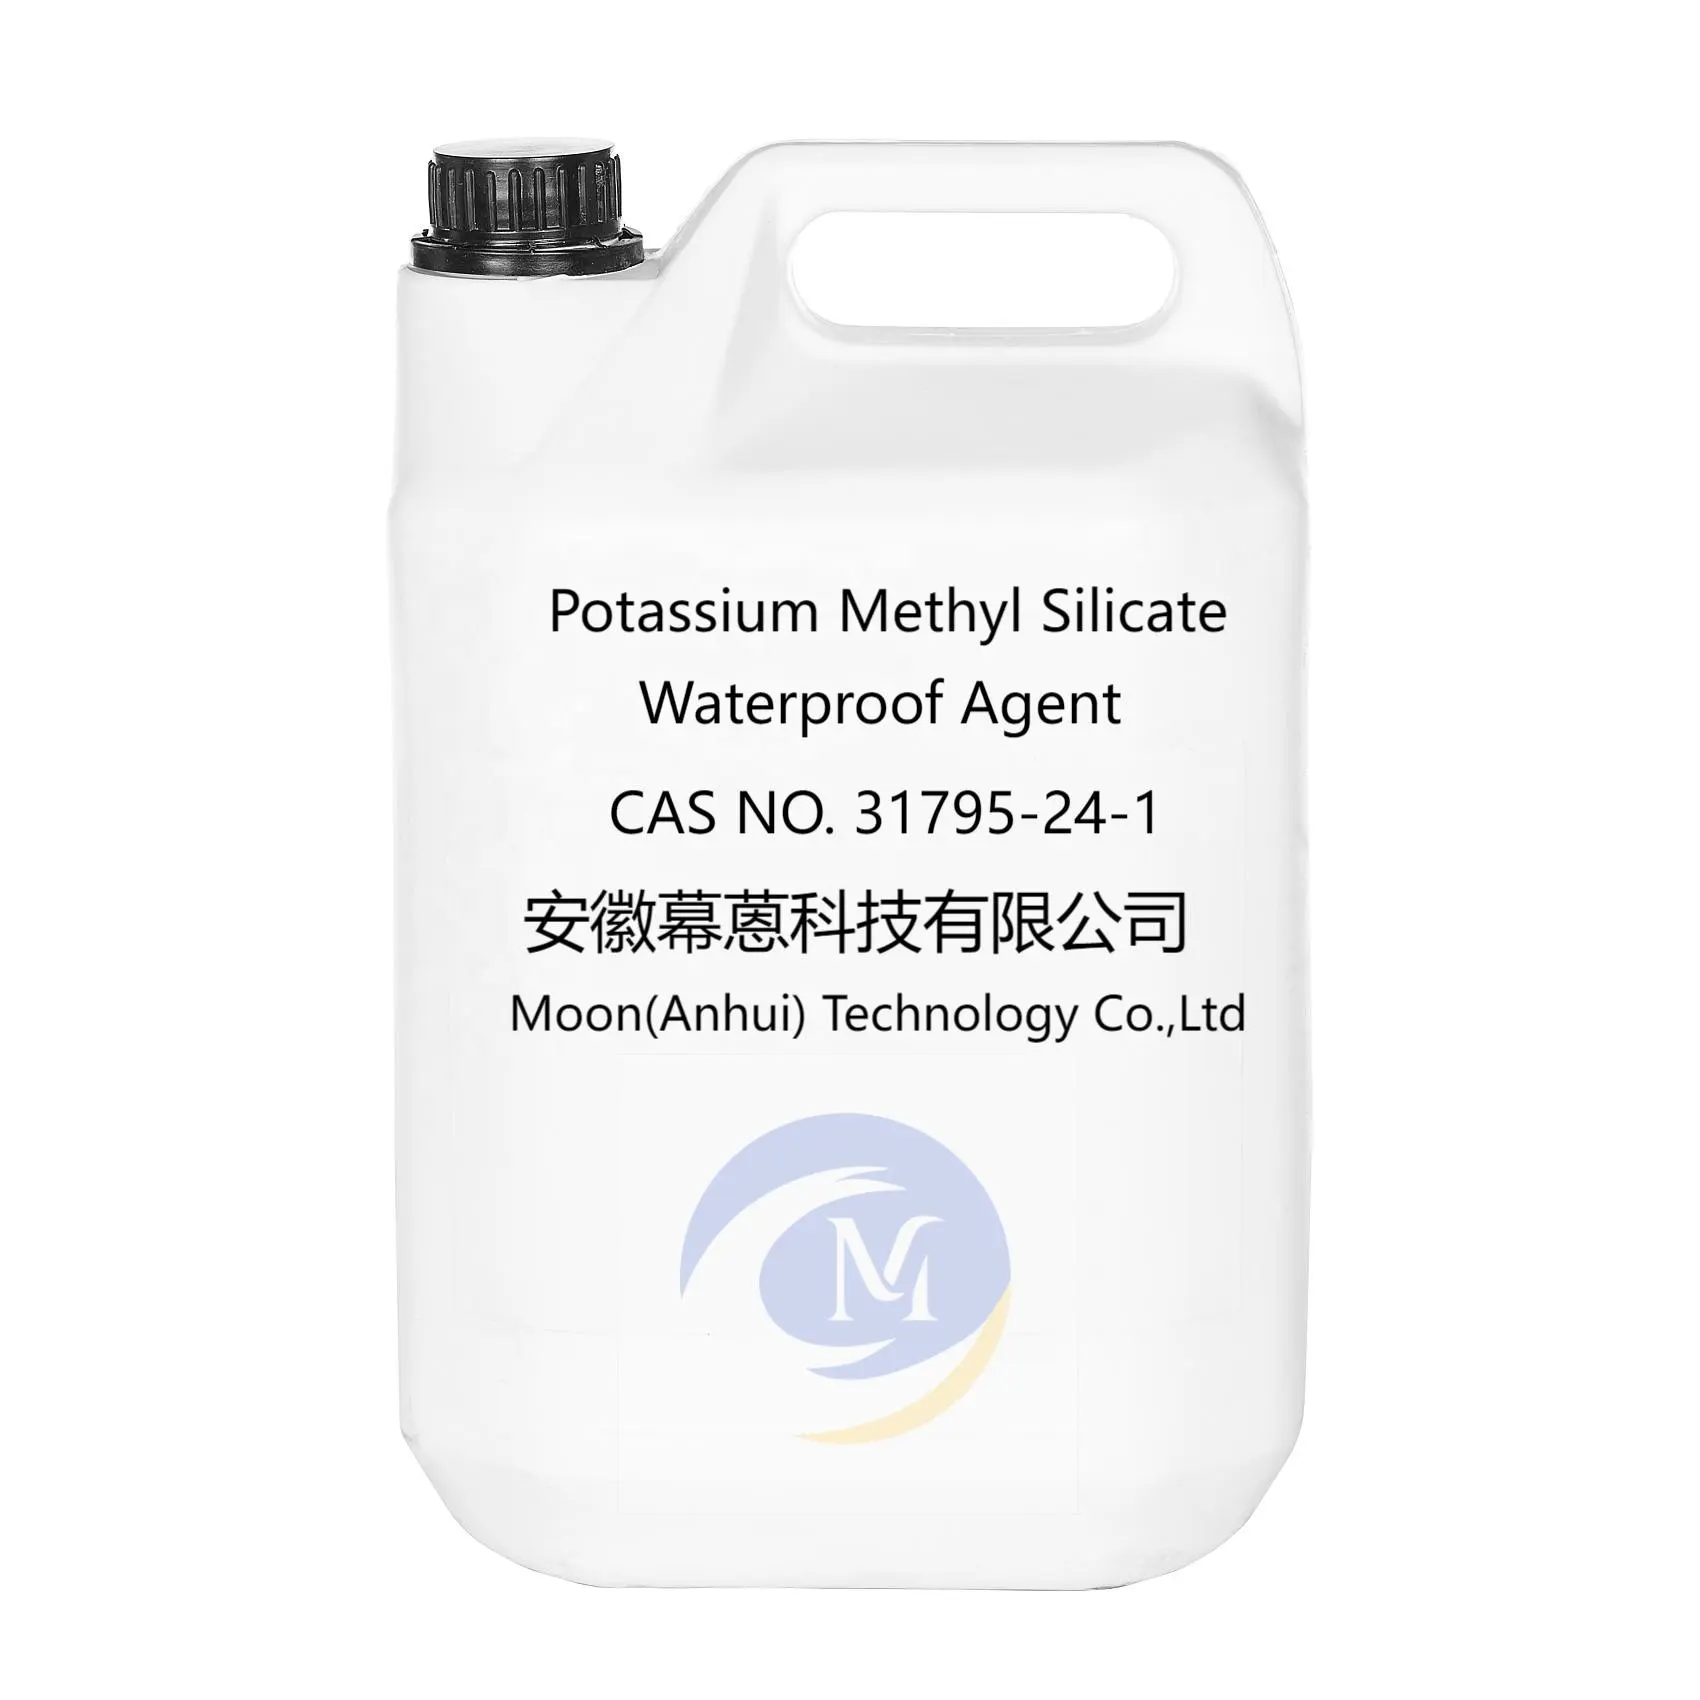 उत्कृष्ट अभेद्य और नमी प्रतिरोध के साथ जलरोधक एजेंट के रूप में पोटेशियम मिथाइल सिल्कॉट